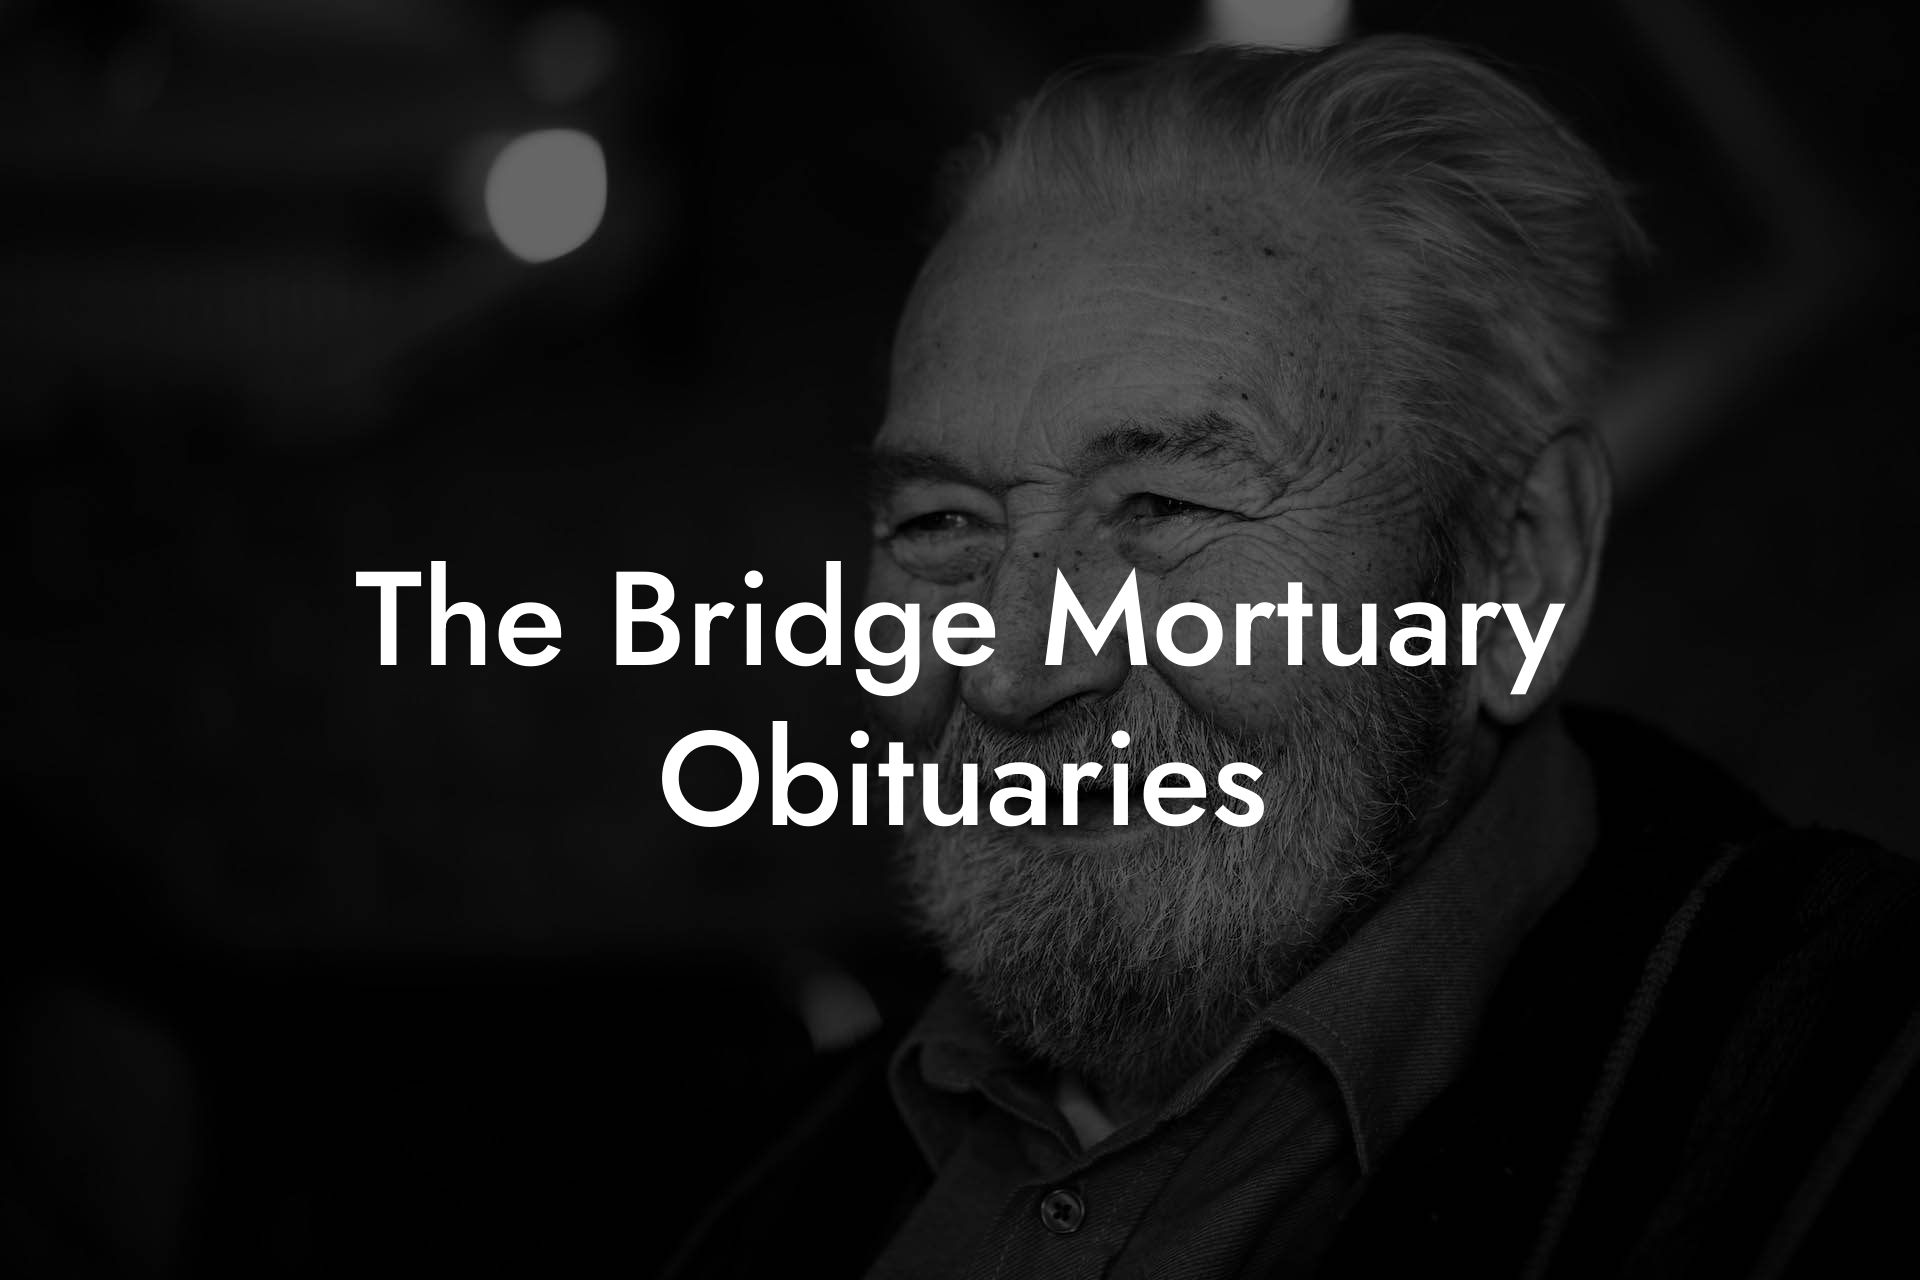 The Bridge Mortuary Obituaries